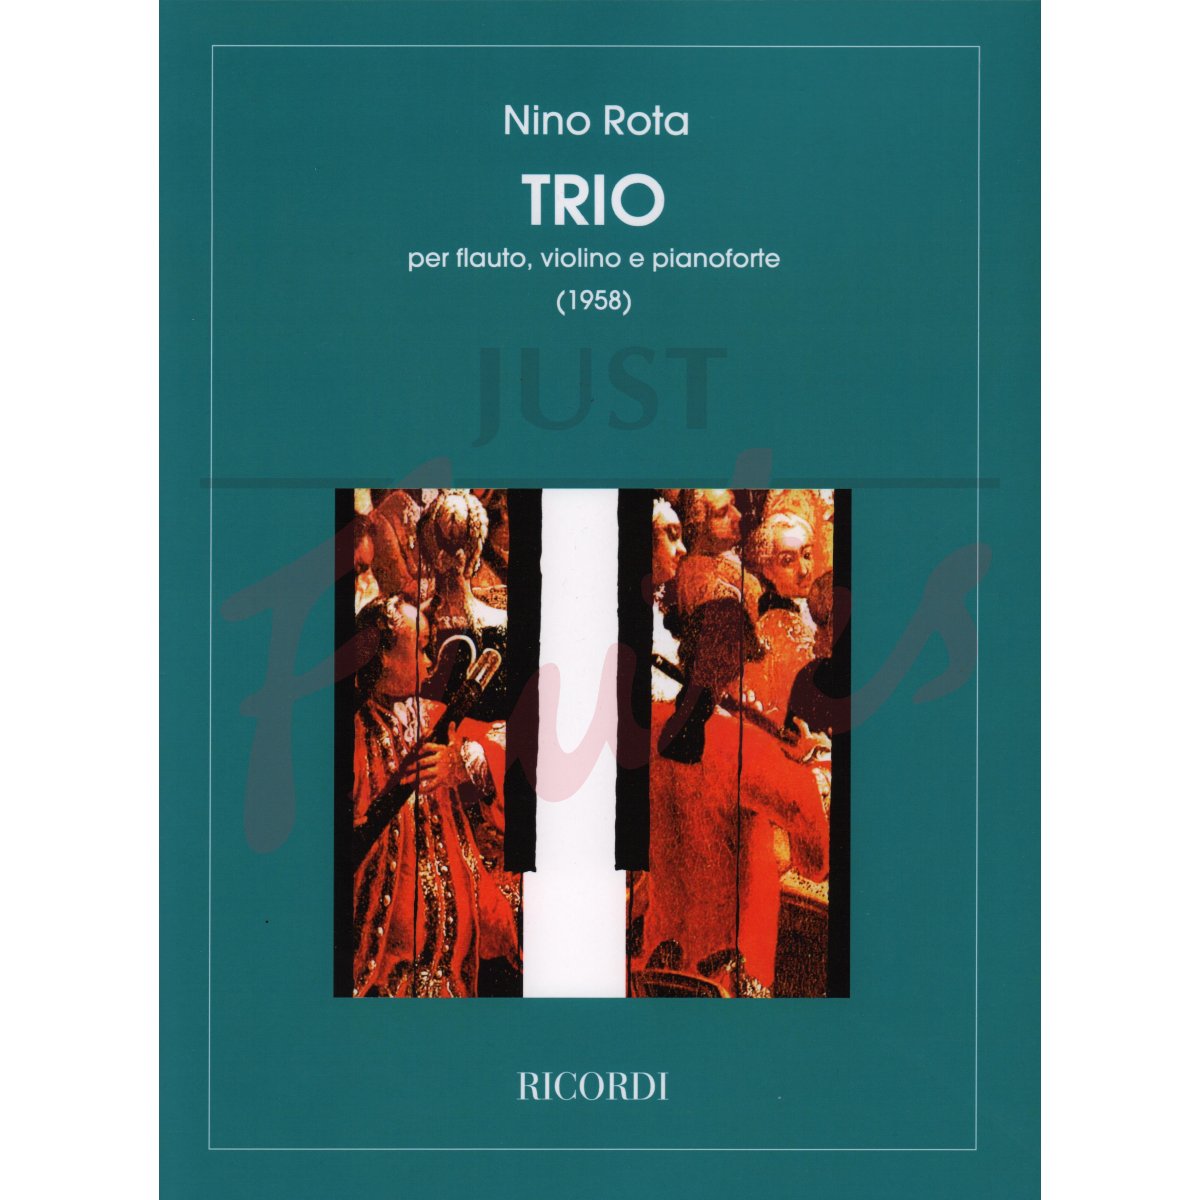 Trio for Flute, Violin and Piano